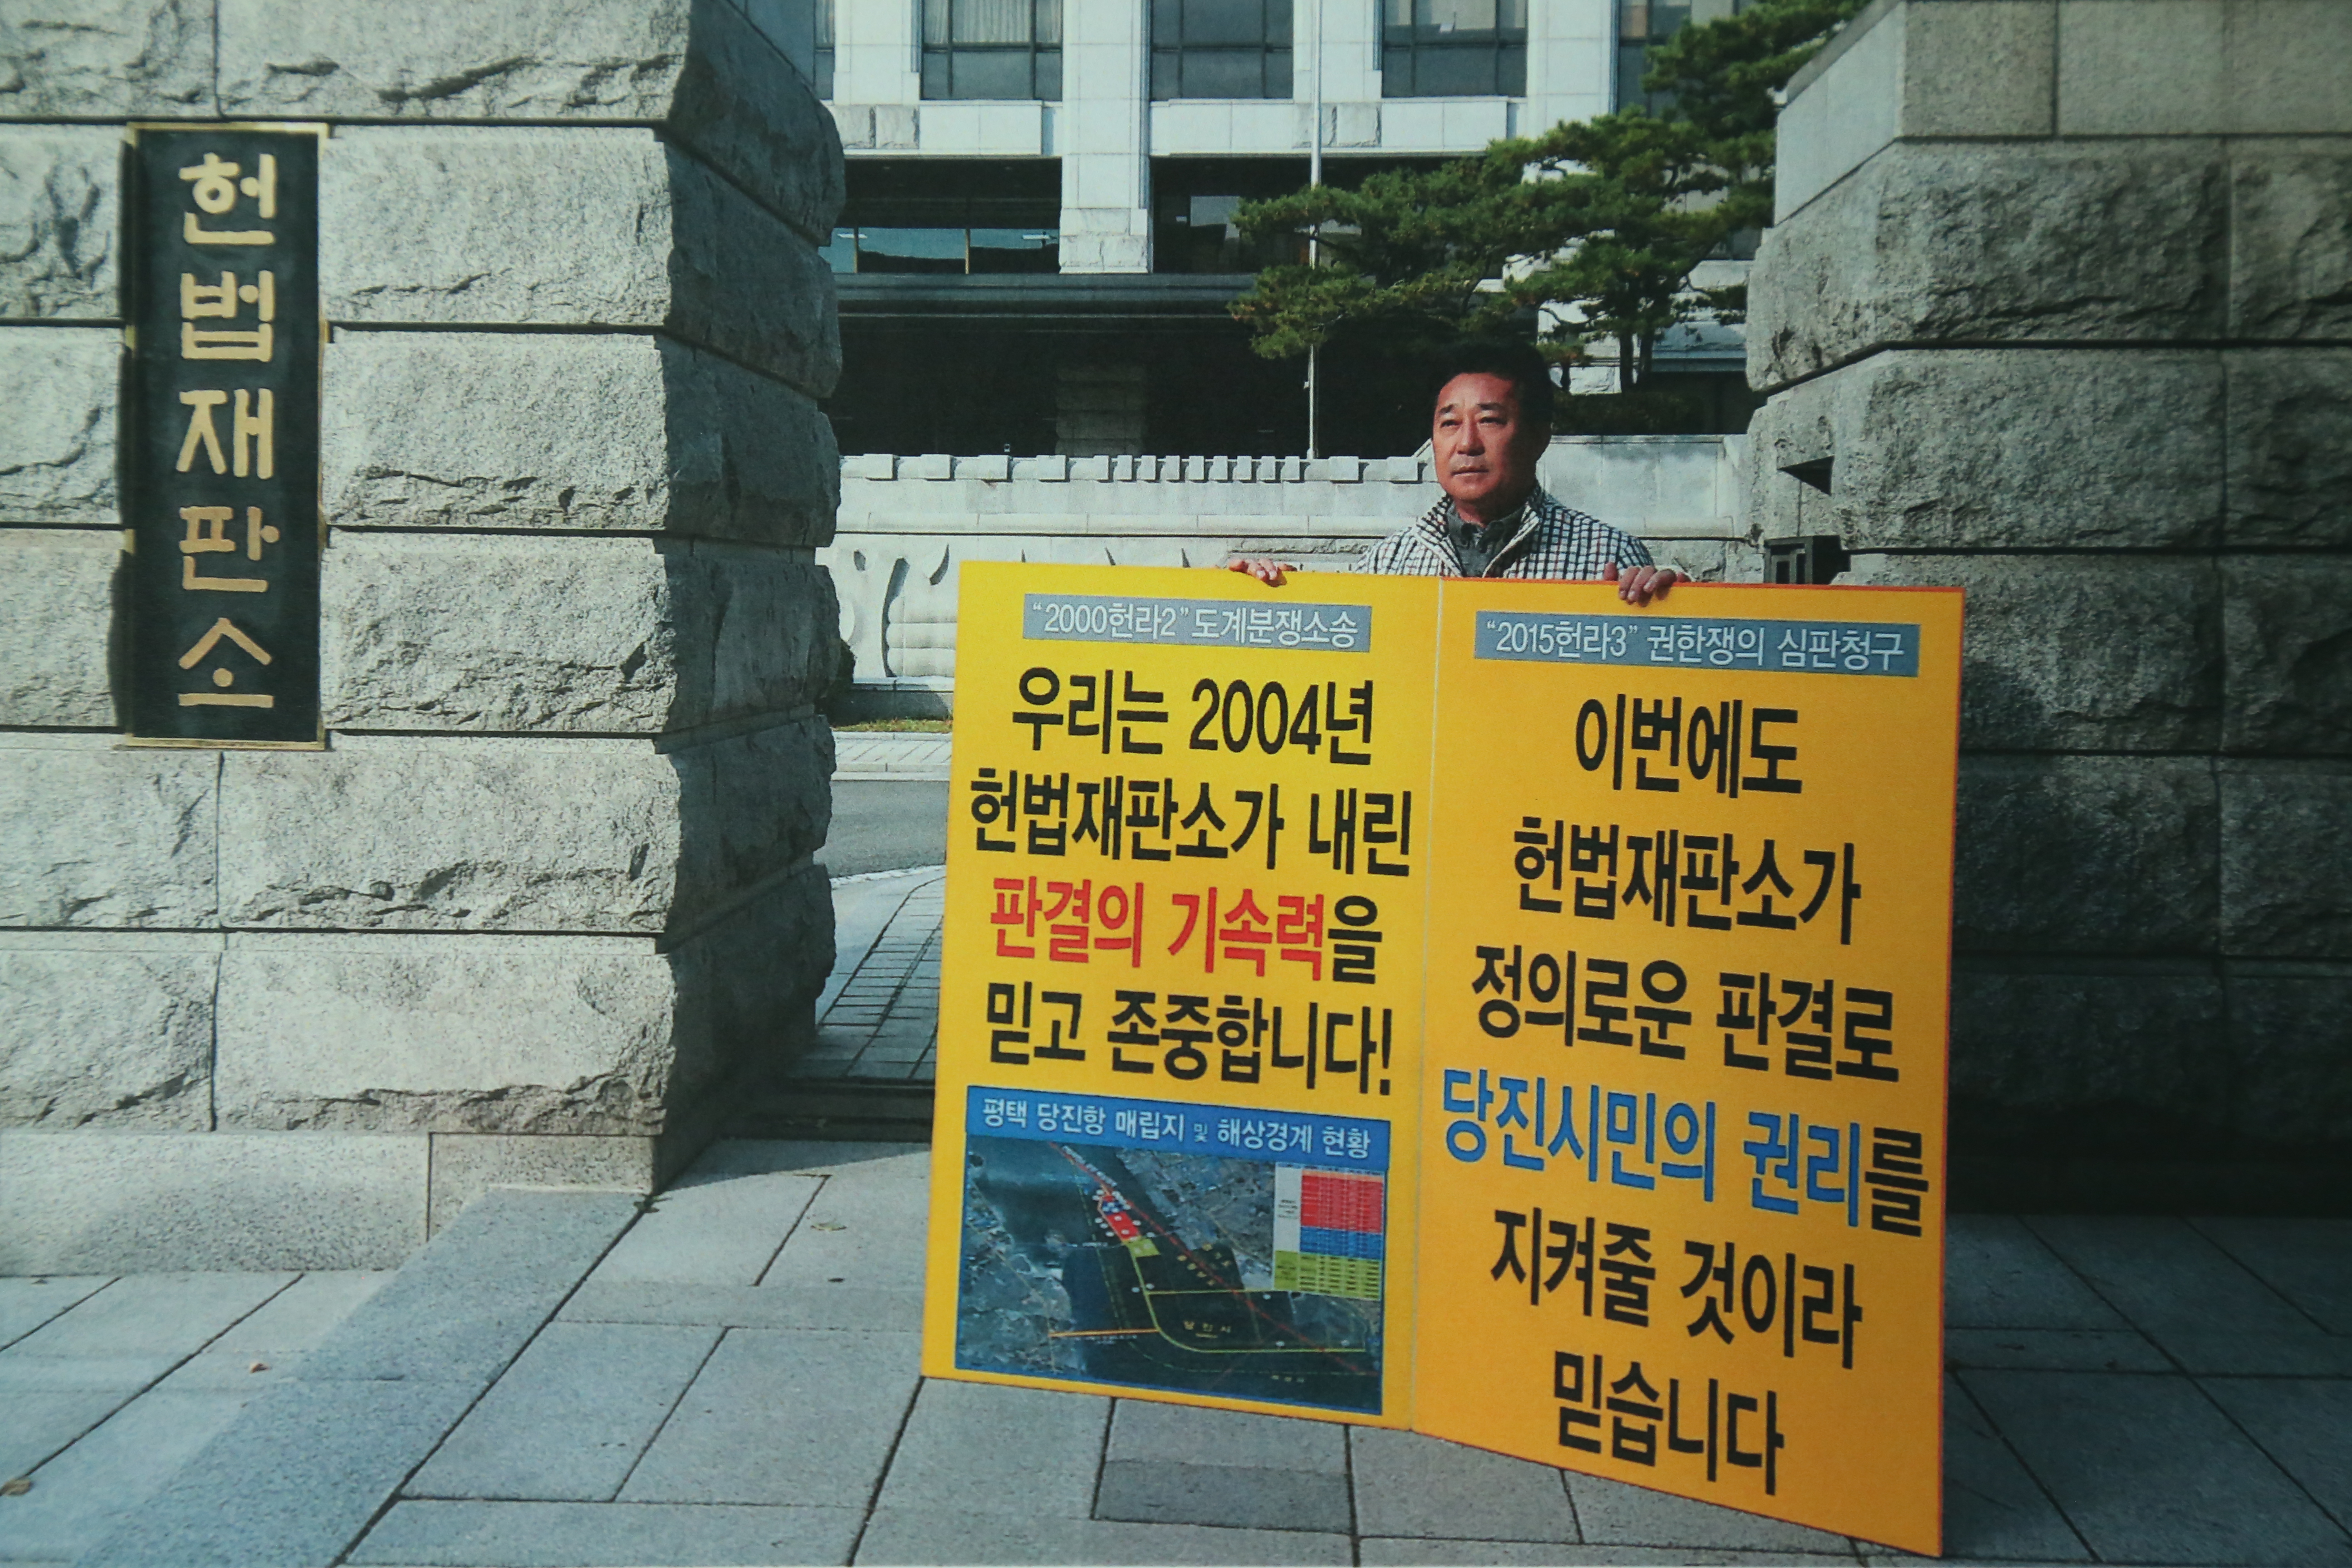 당진땅 찾기 헌법재판소 1인 피켓 시위(인효식 의원)